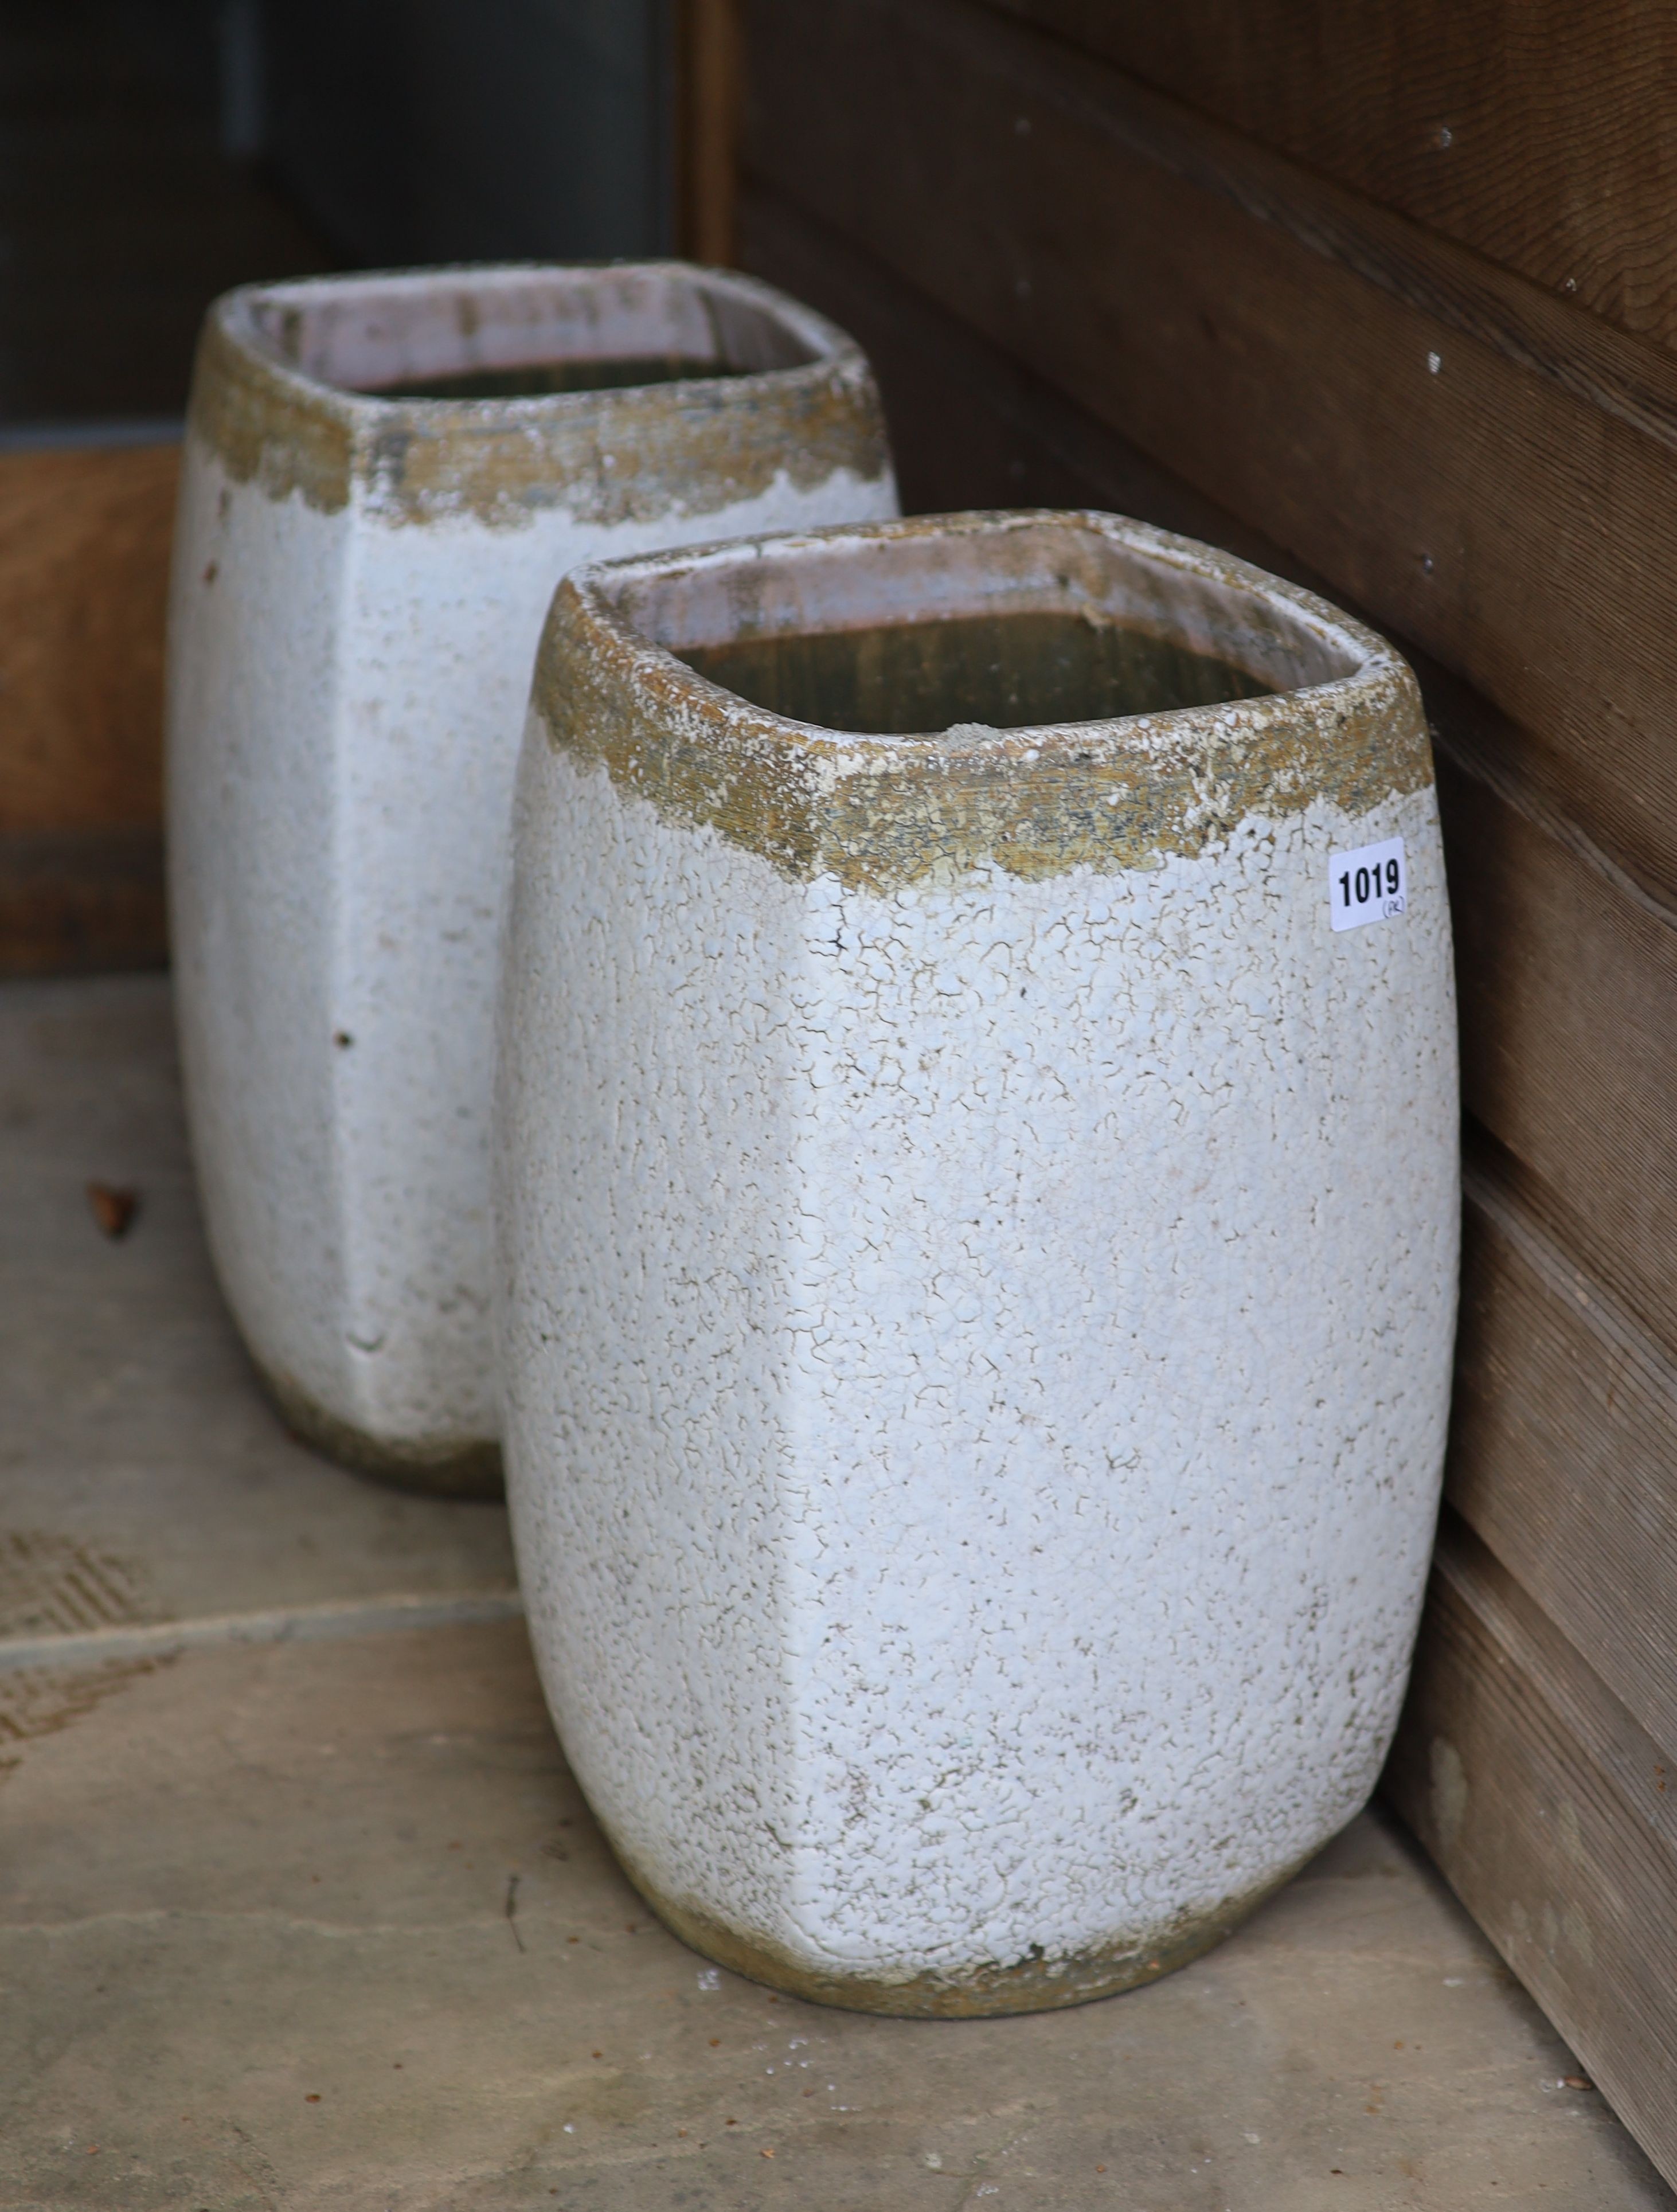 A pair of Celine de Lys ceramic vases, height 41cm